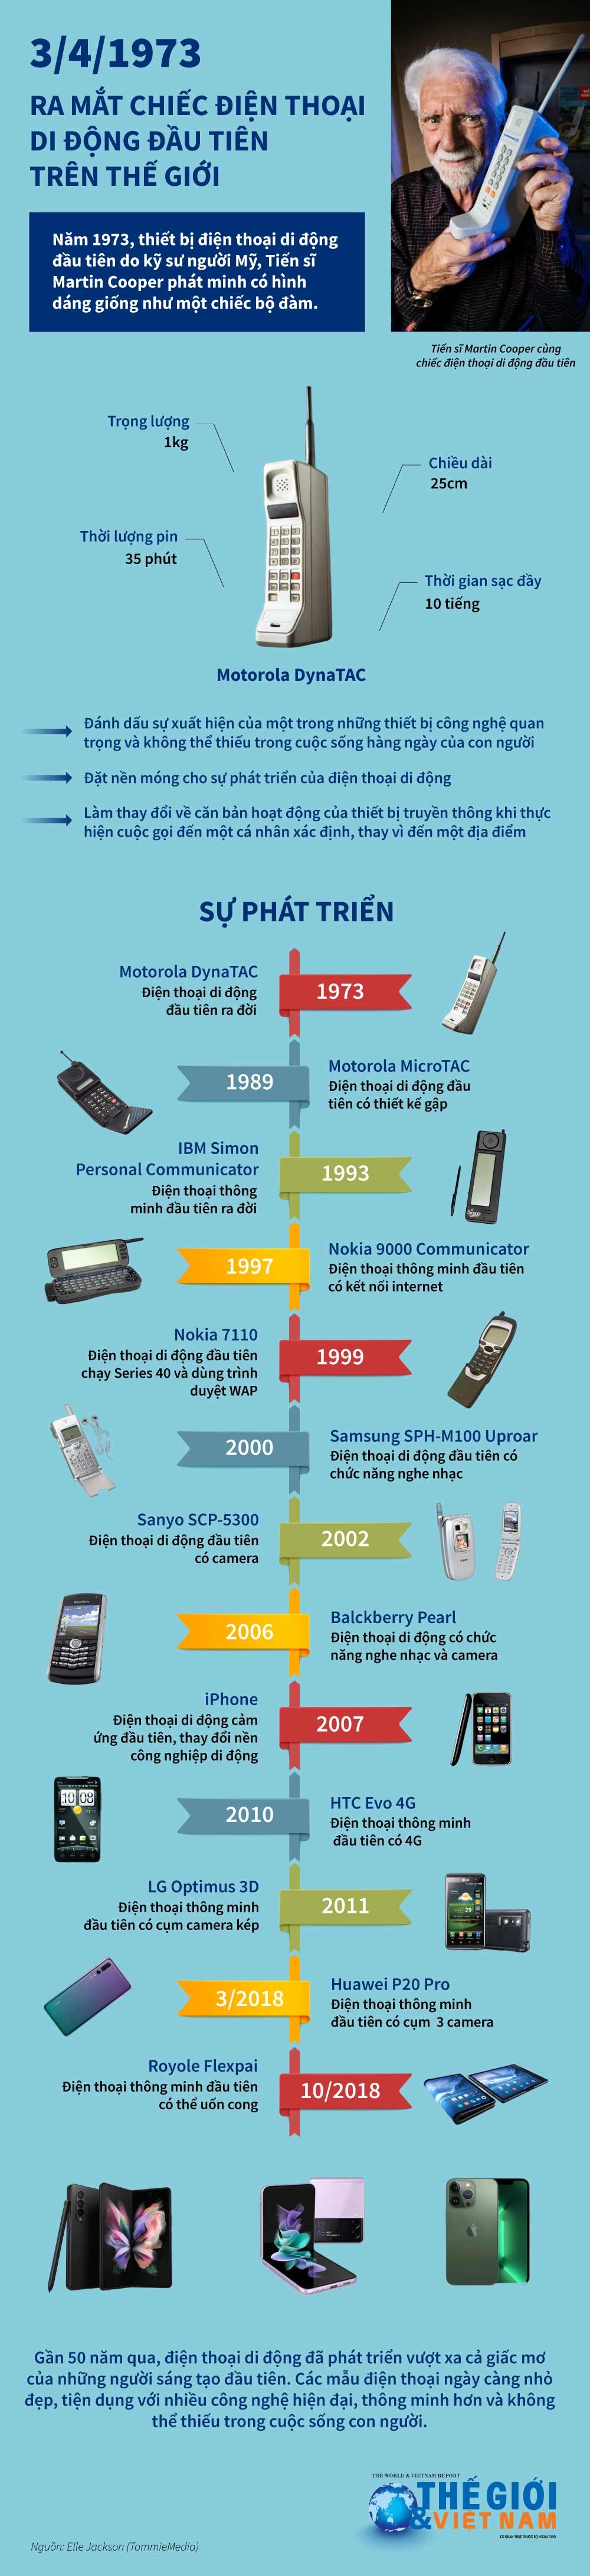 Điện thoại di động đầu tiên trên thế giới bước sang tuổi 50. (Nguồn: Báo TG&VN)